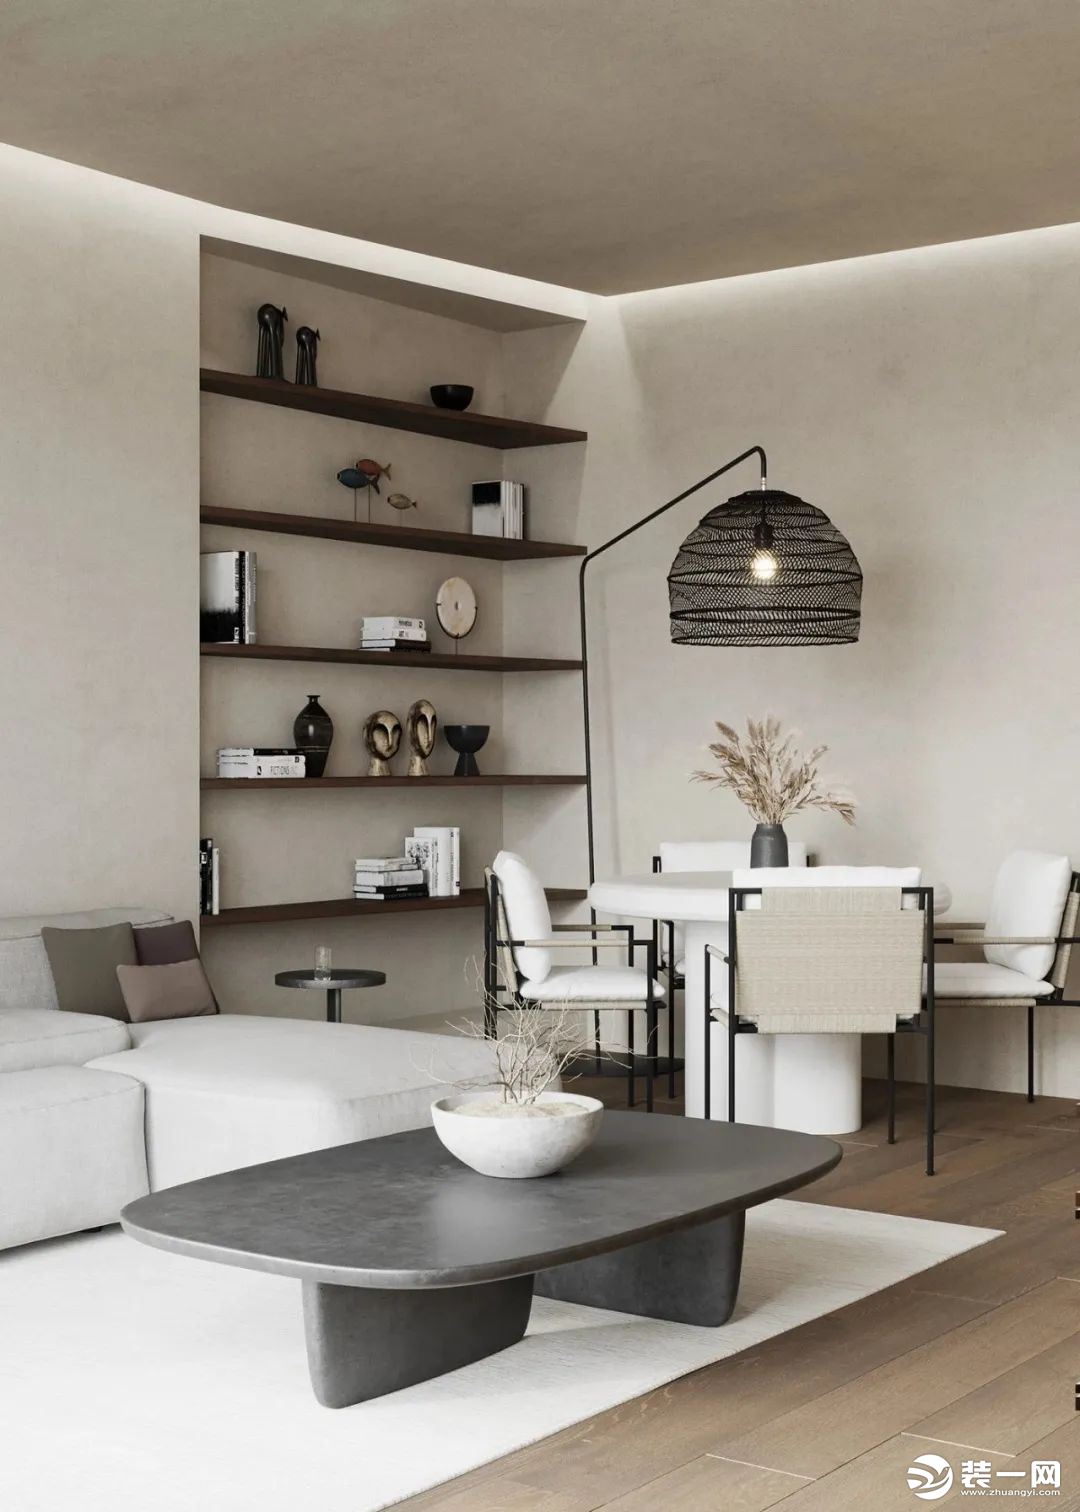 客厅整体以白色为主，用沙发来定义主色调，越简单越经得起考验，让回家变成一种期待。